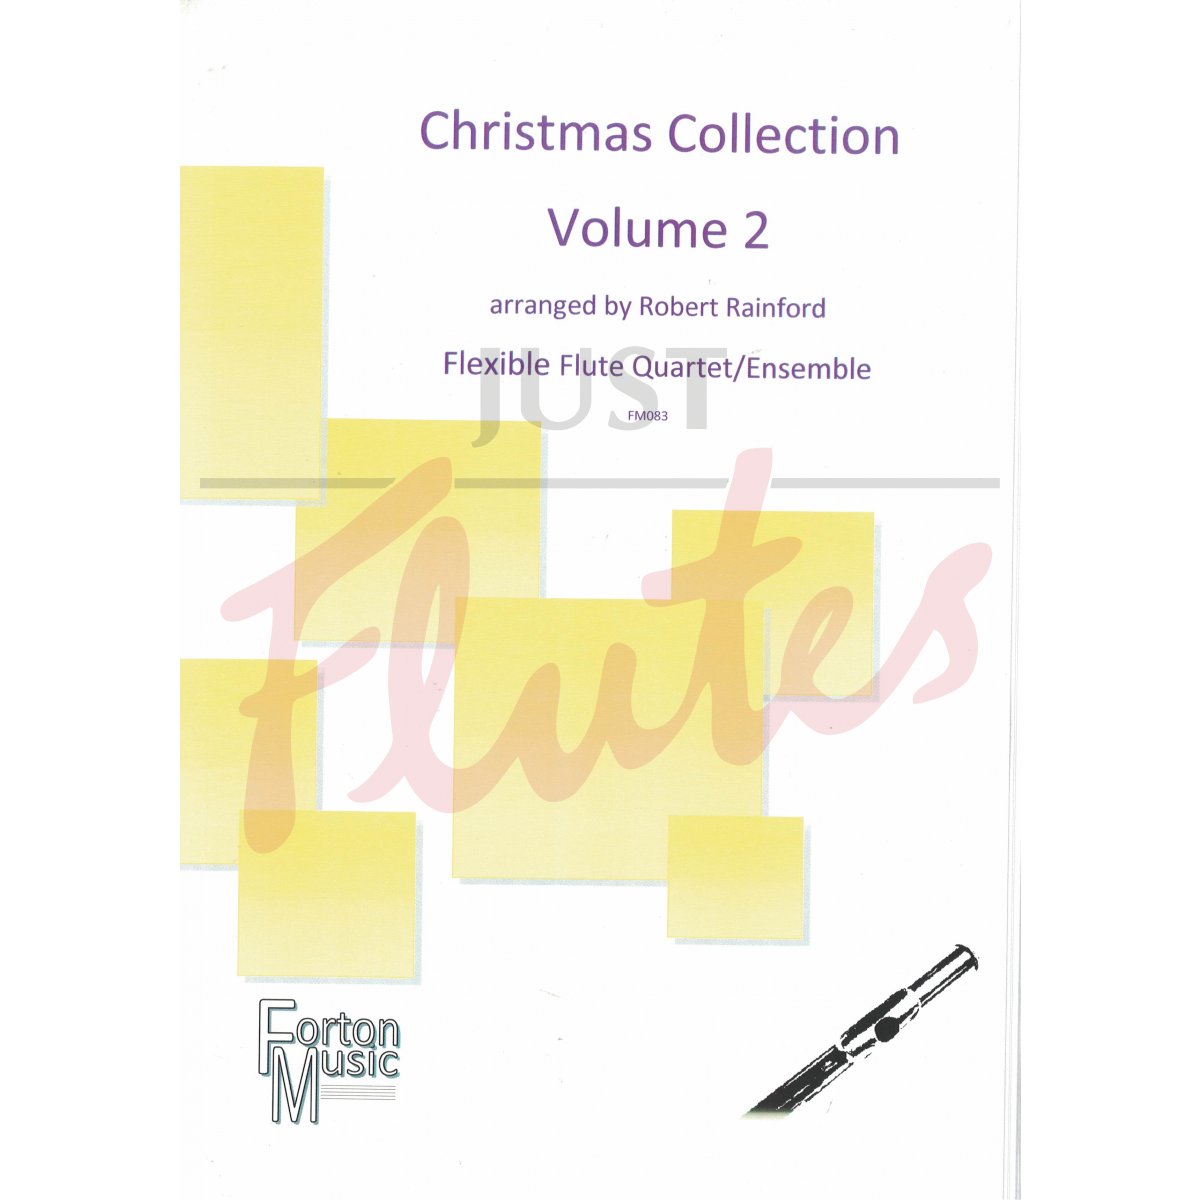 Christmas Collection for Flexible Flute Quartet/Ensemble, Volume 2